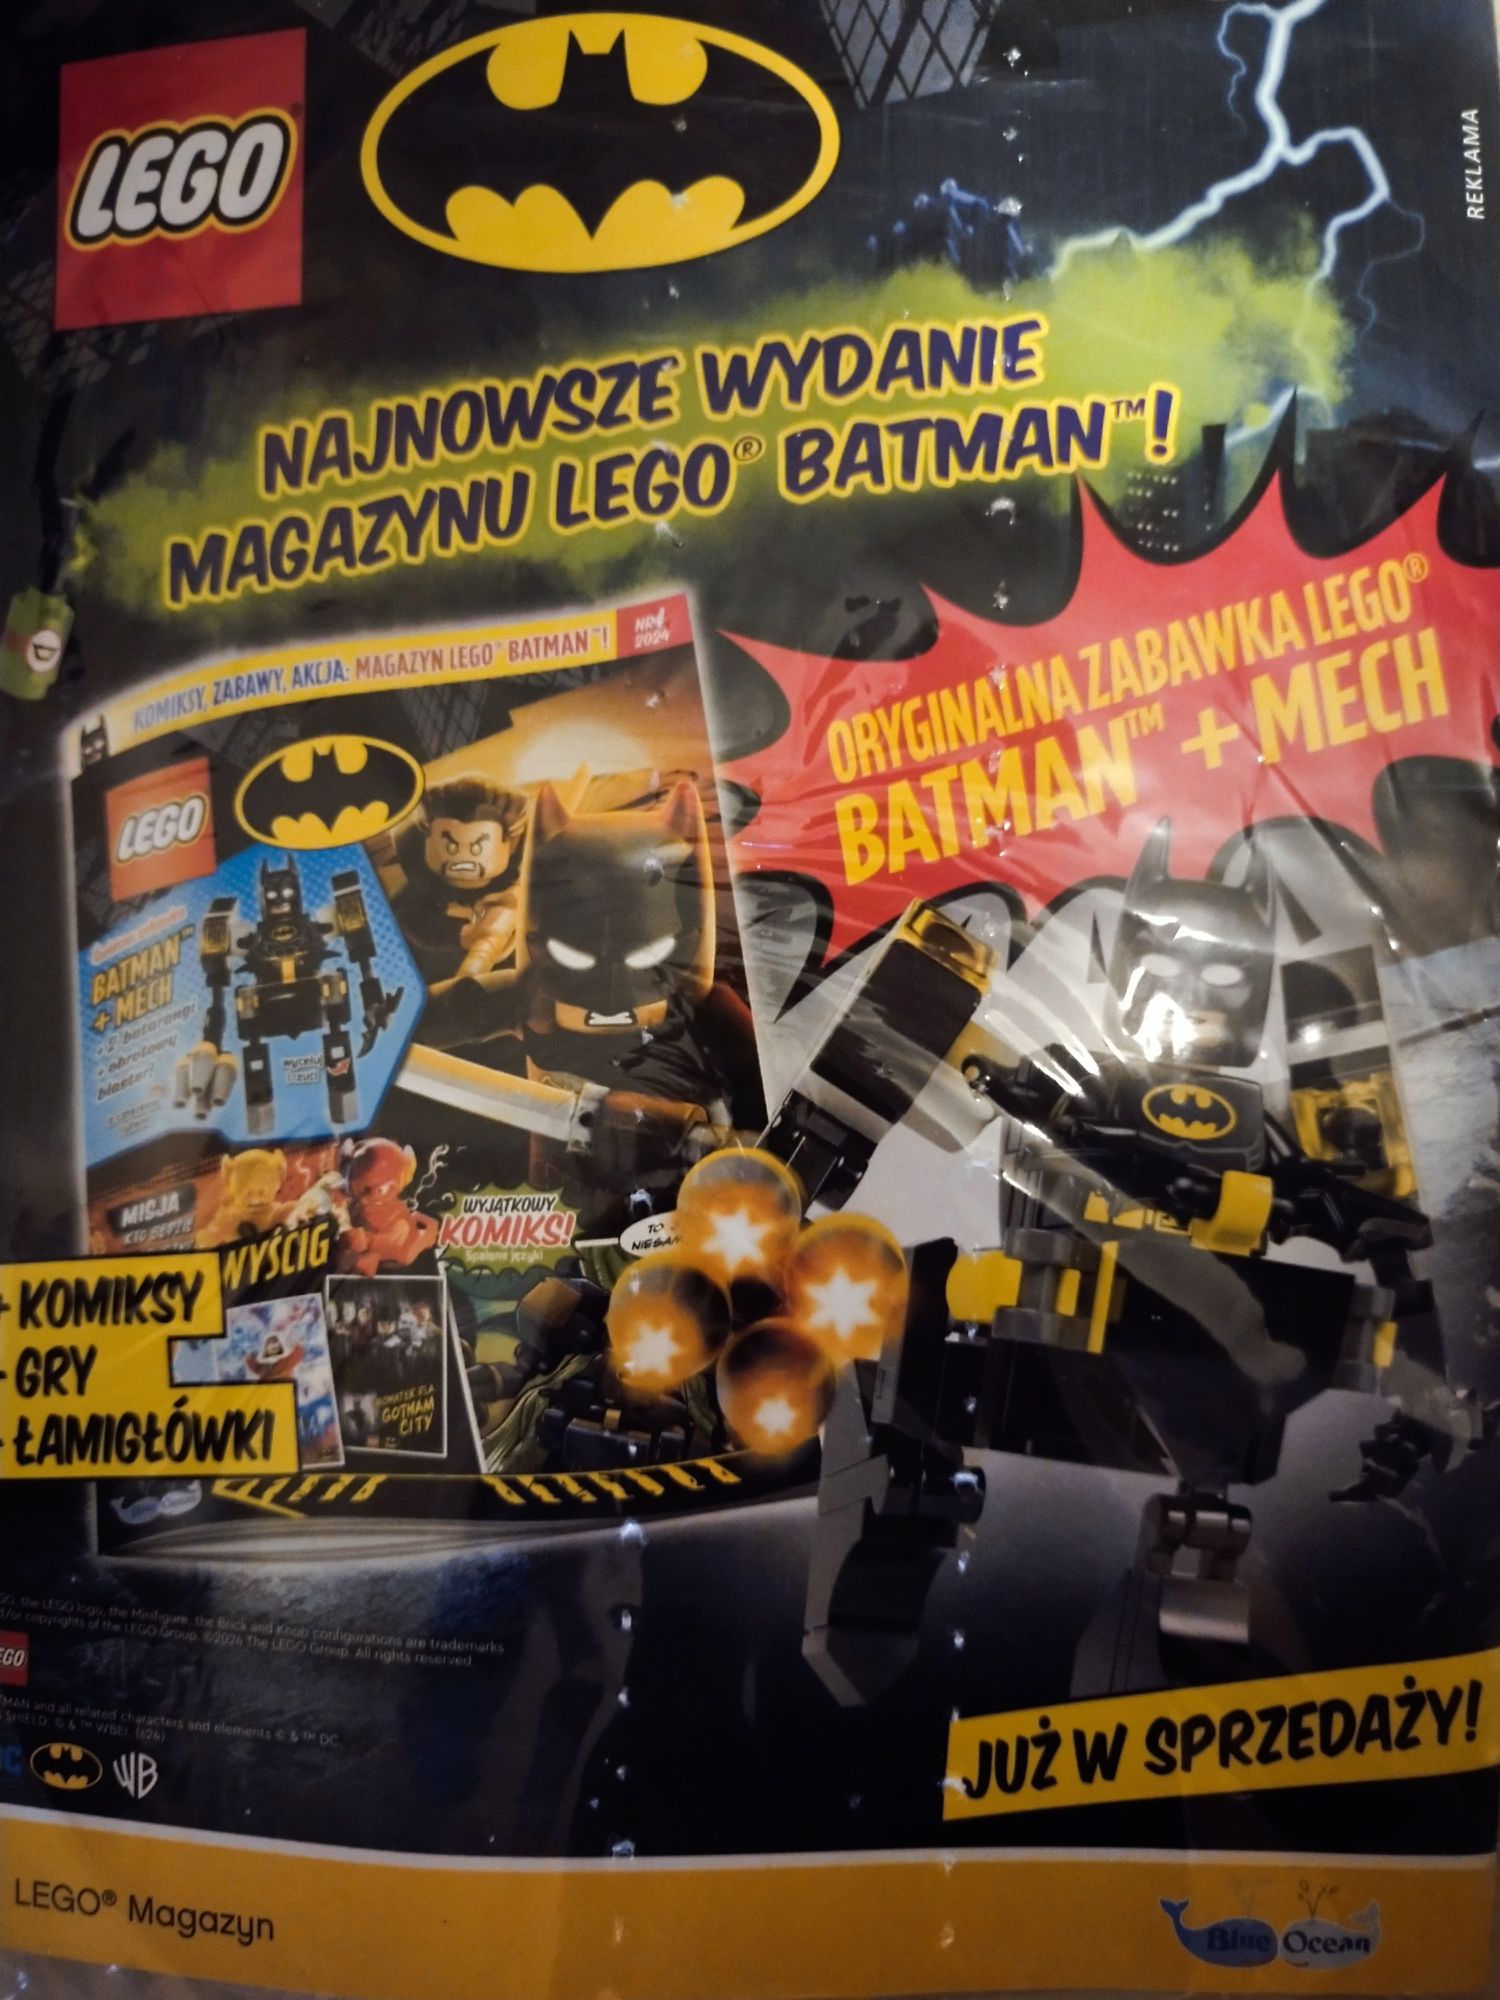 Nowa gazetka LEGO Ninjago wydanie specjalne